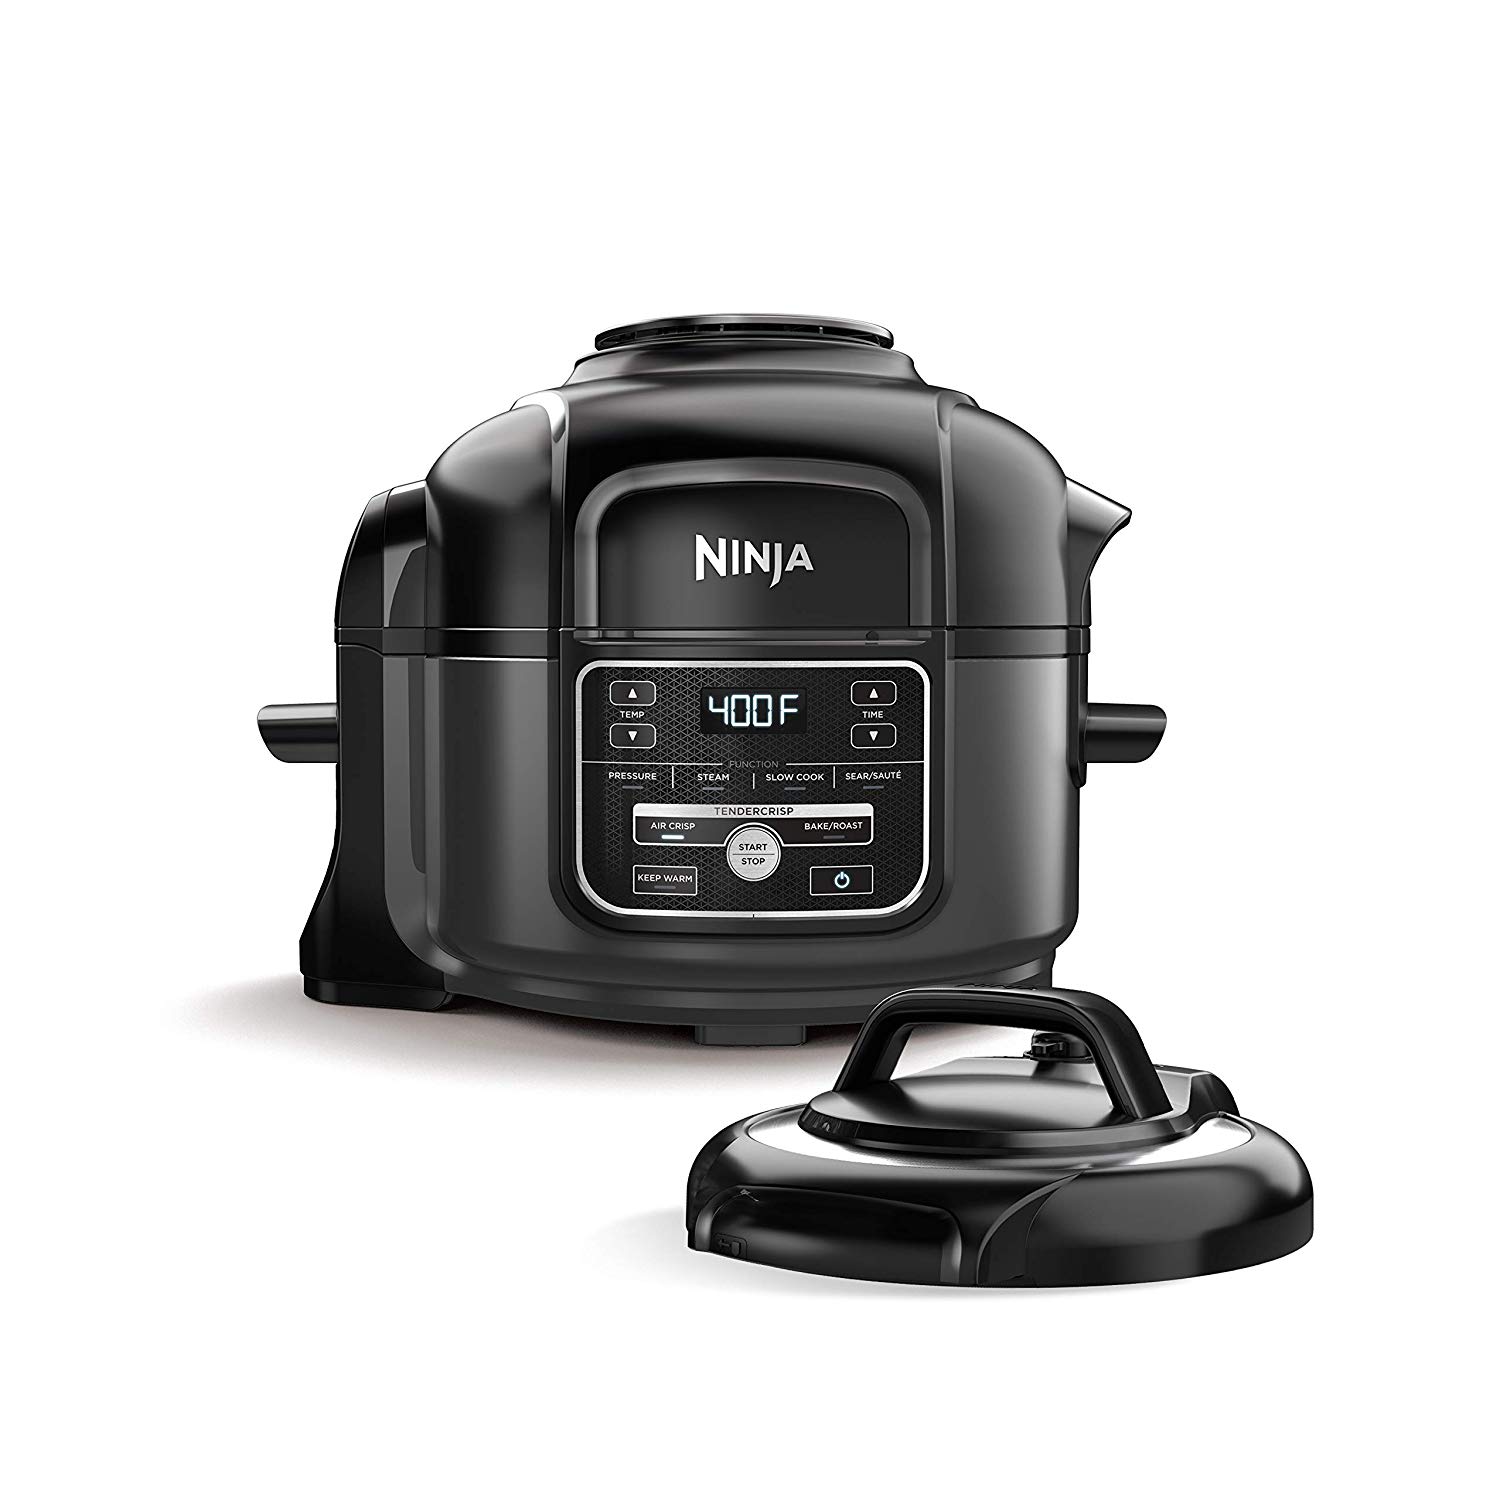 https://www.dontwasteyourmoney.com/wp-content/uploads/2020/01/ninja-foodi-7-in-1-programmable-pressure-fryer-multi-cooker.jpg